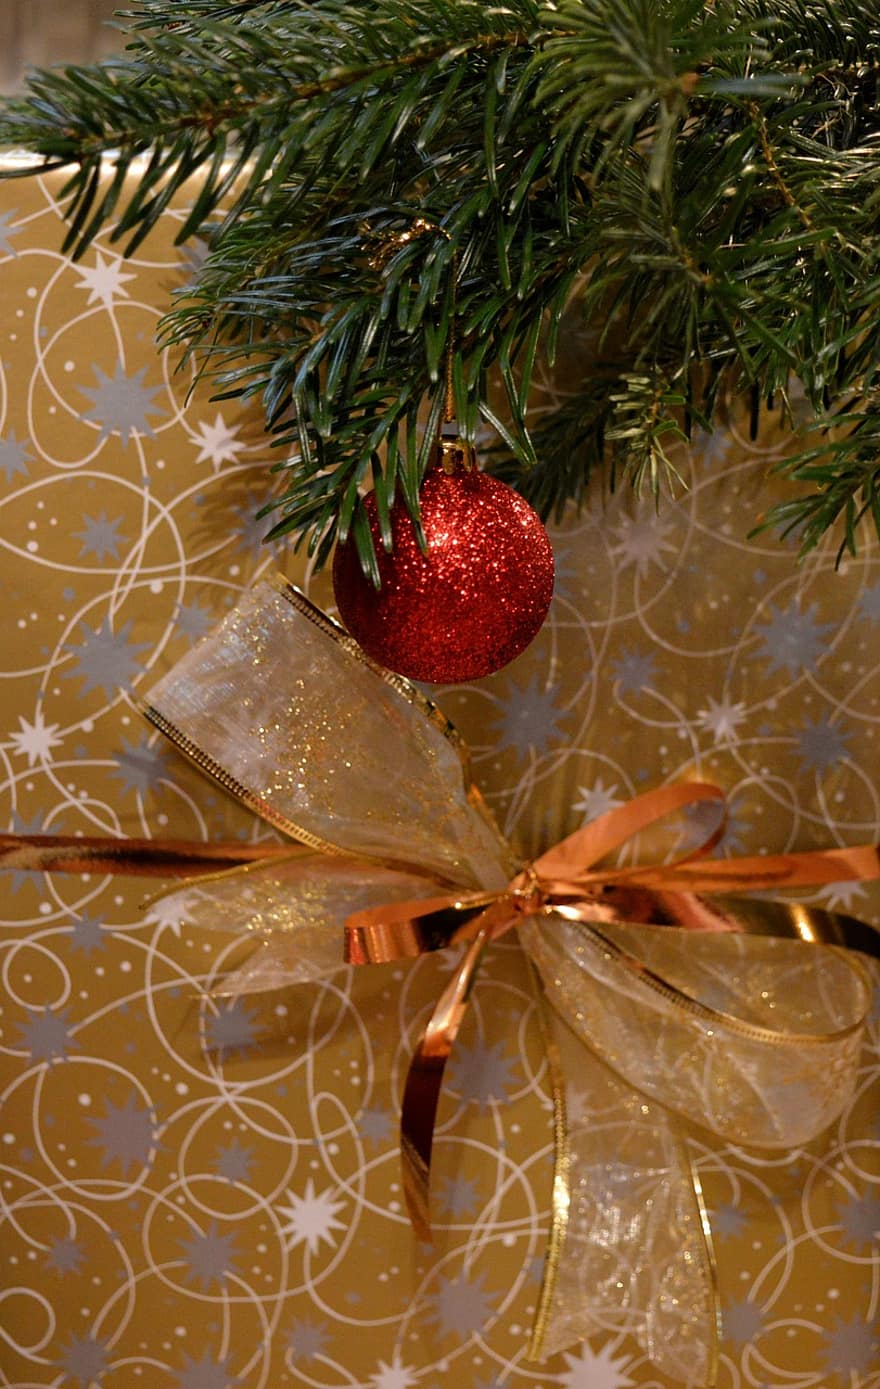 noel motifi, kırmızı biblo, çam dalları, Noel, Noel ruhu, yılbaşı ağacı süsleri, Noel dekorasyonu, Yılbaşı hediyesi, hediye, Noel zamanı, Bayram sezonum